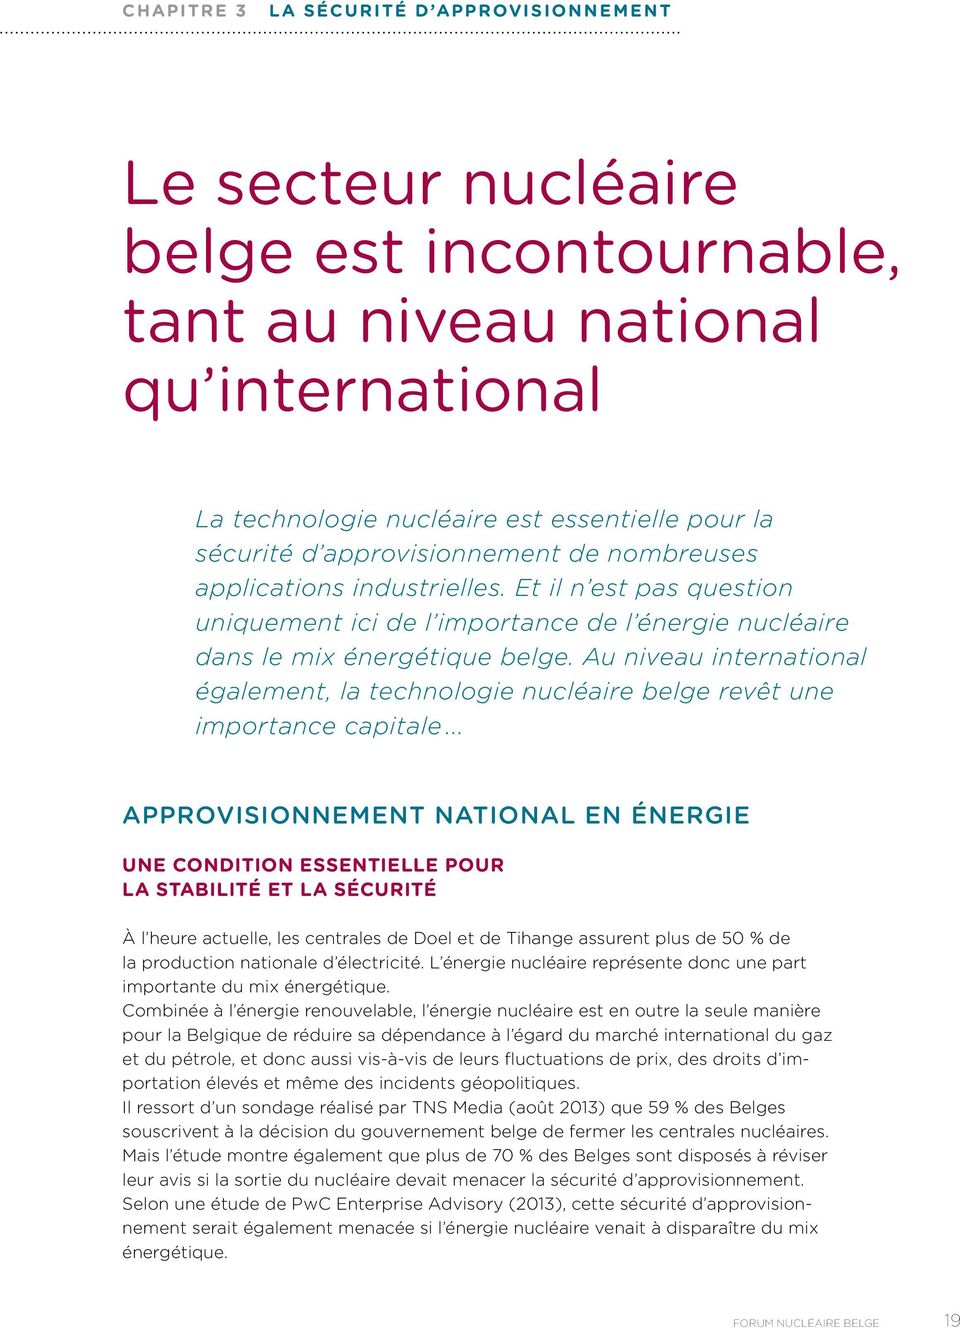 Au niveau international également, la technologie nucléaire belge revêt une importance capitale.